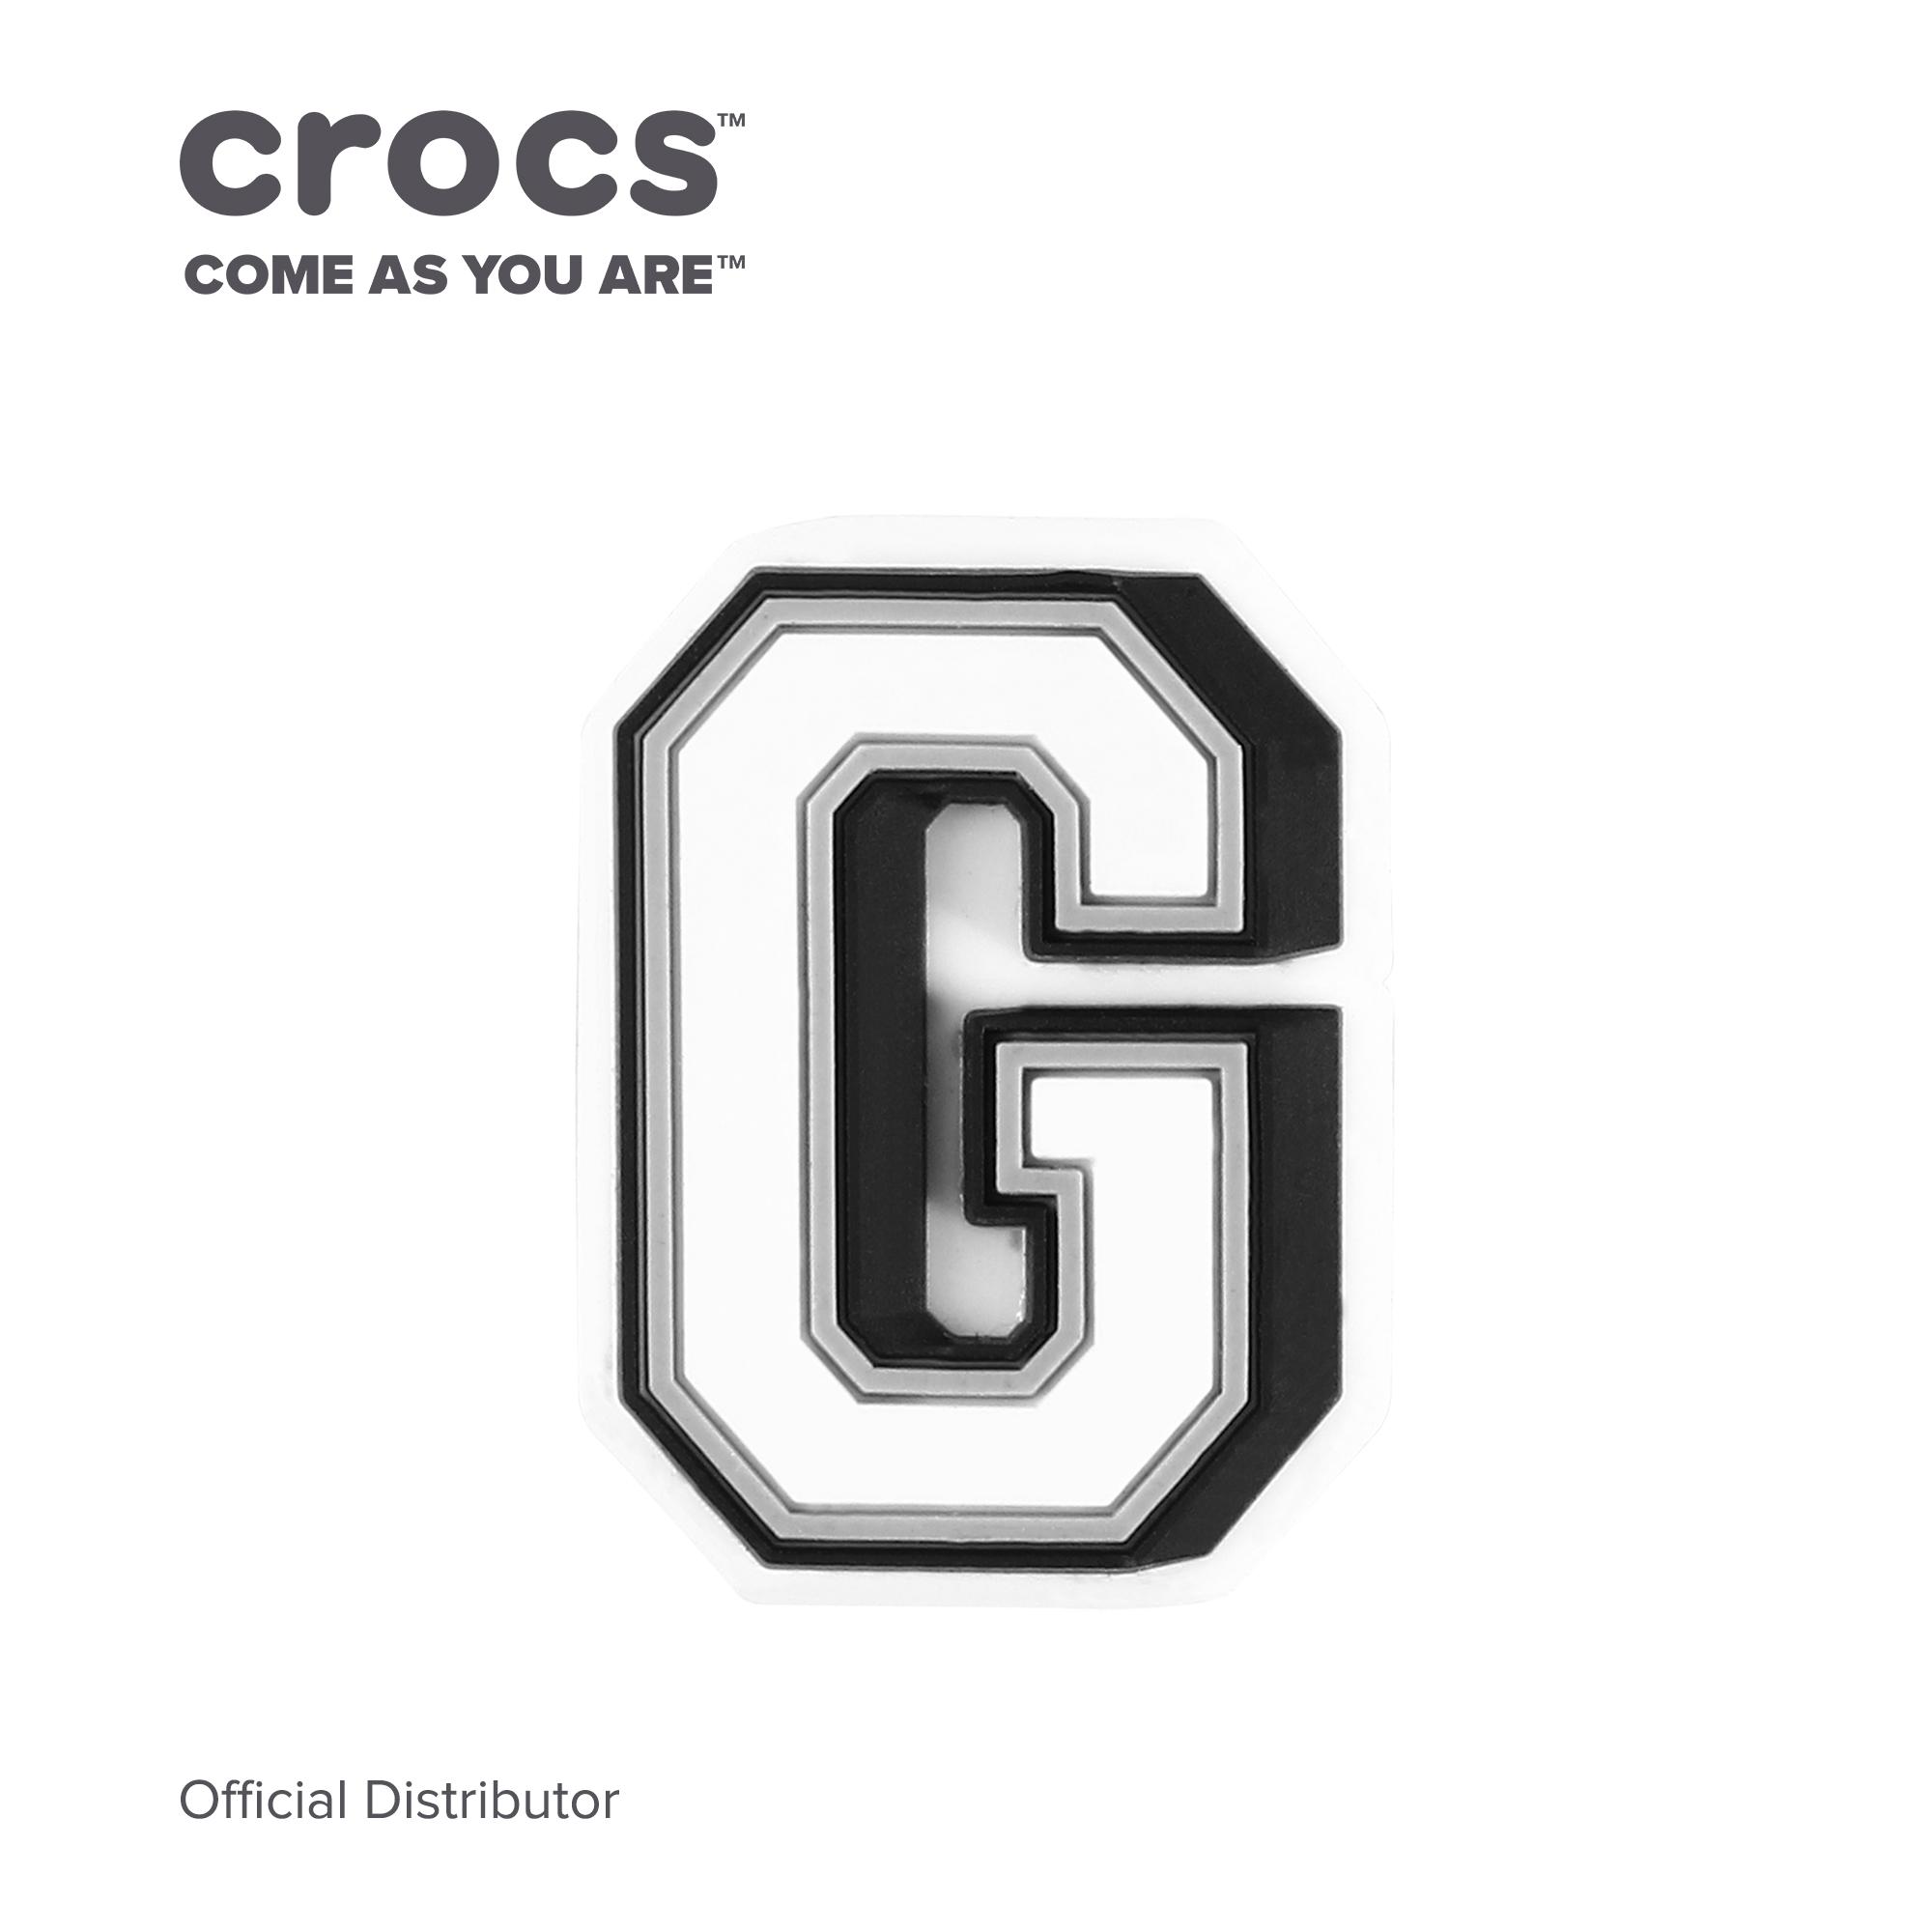 crocs decorations letters